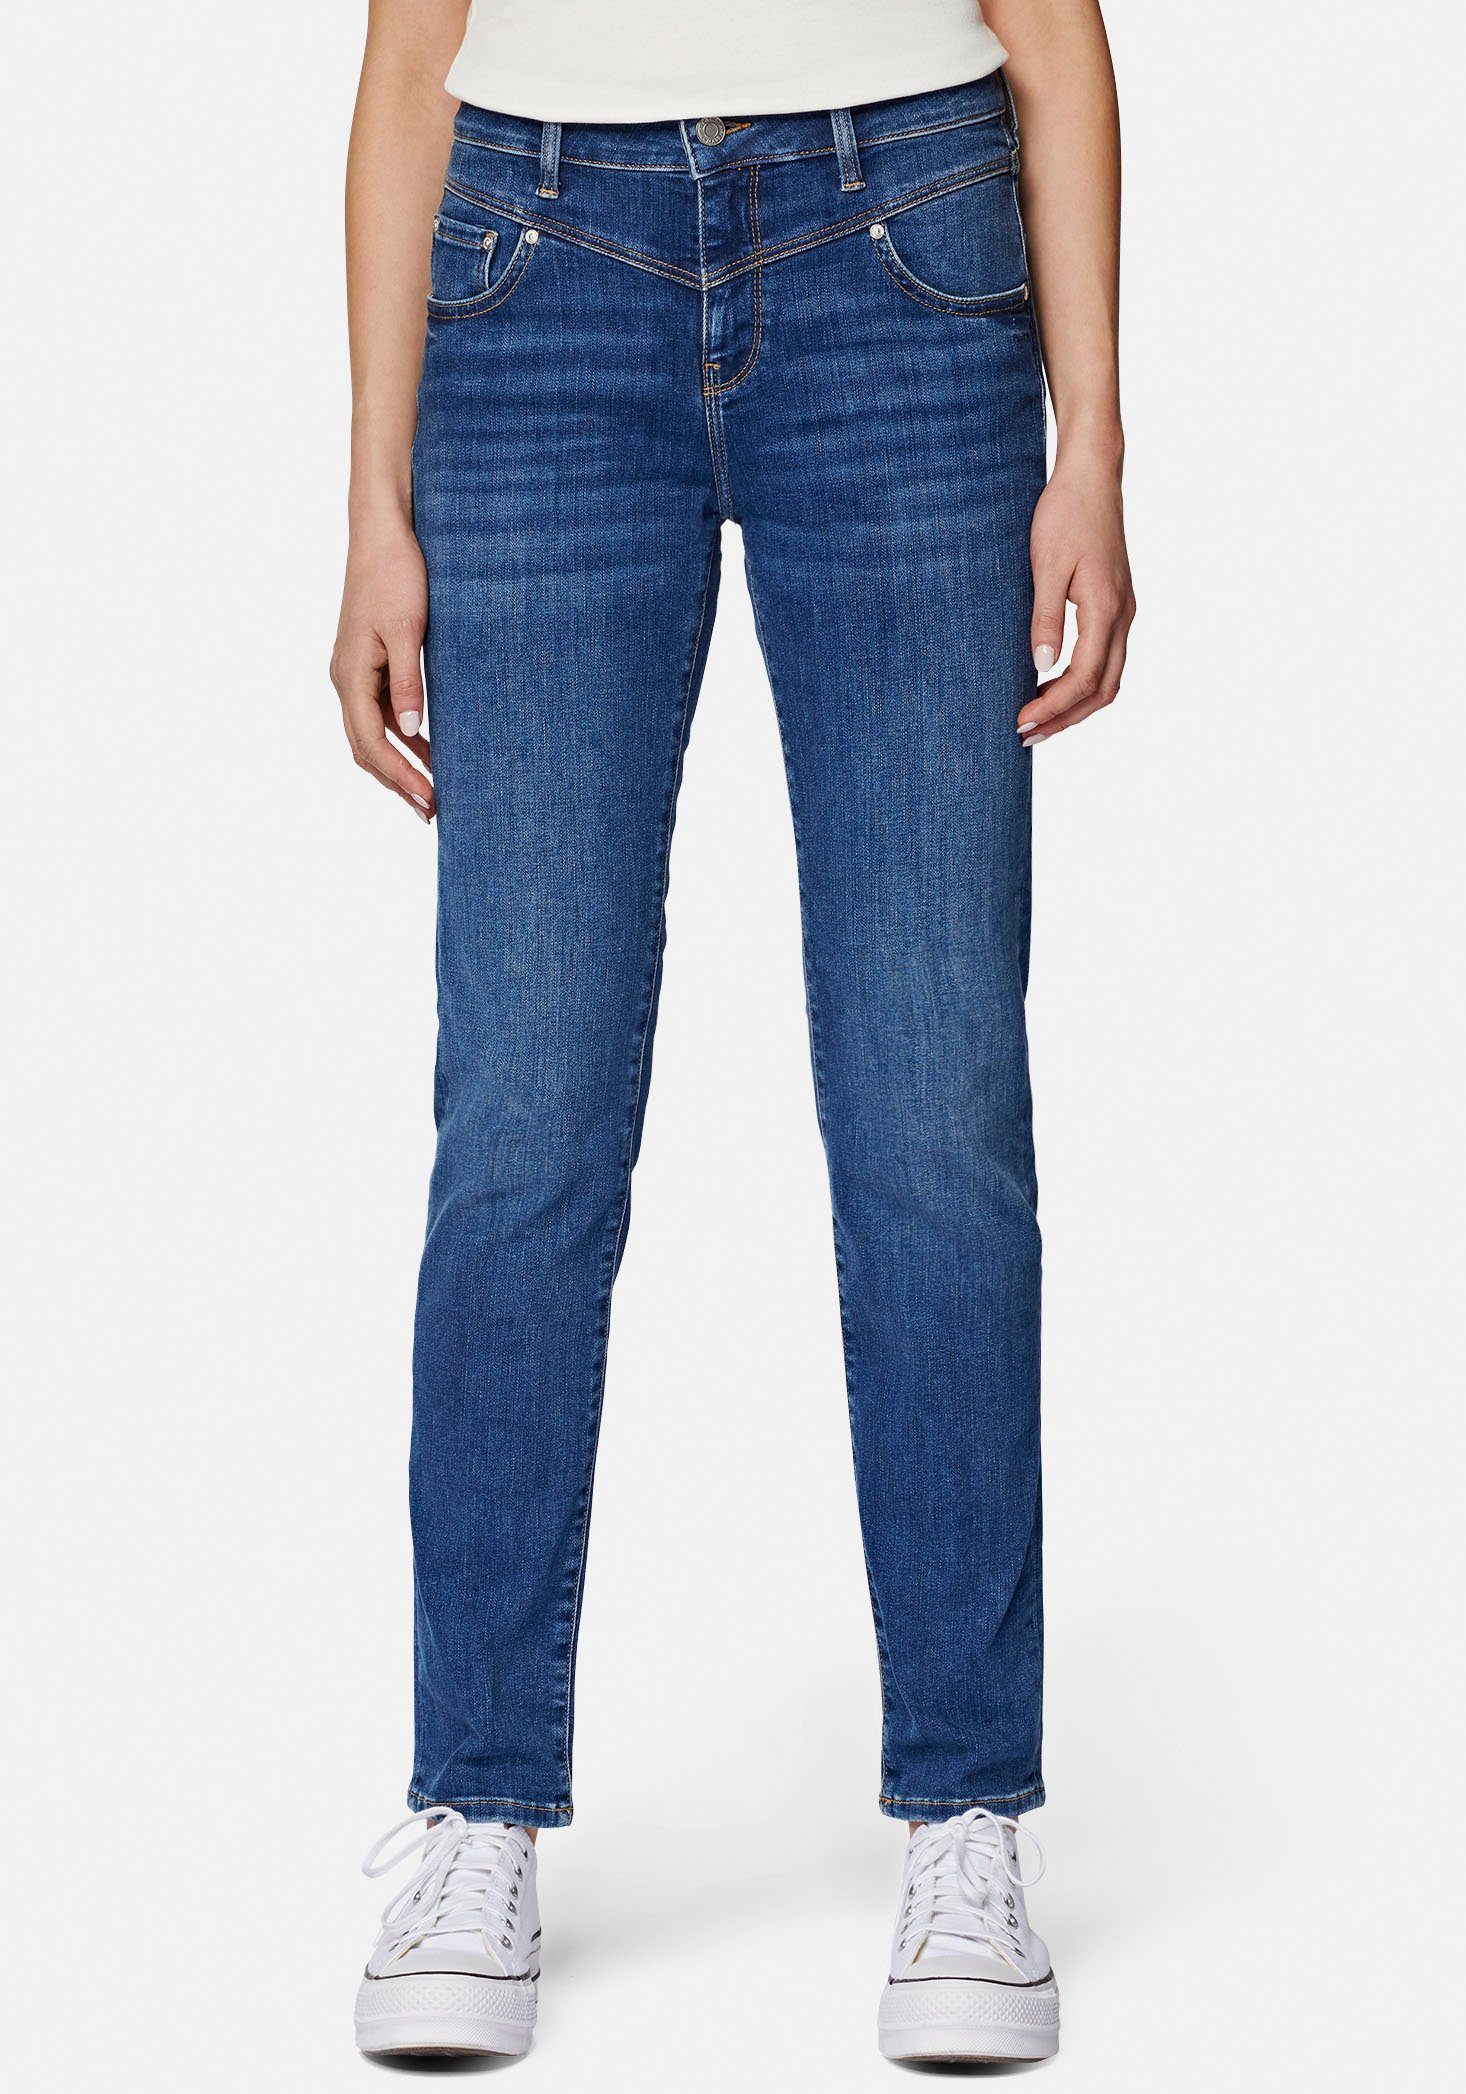 Mavi Slim-fit-Jeans trageangenehmer Stretchdenim dank hochwertiger Verarbeitung mid shaded blue (mid blue)